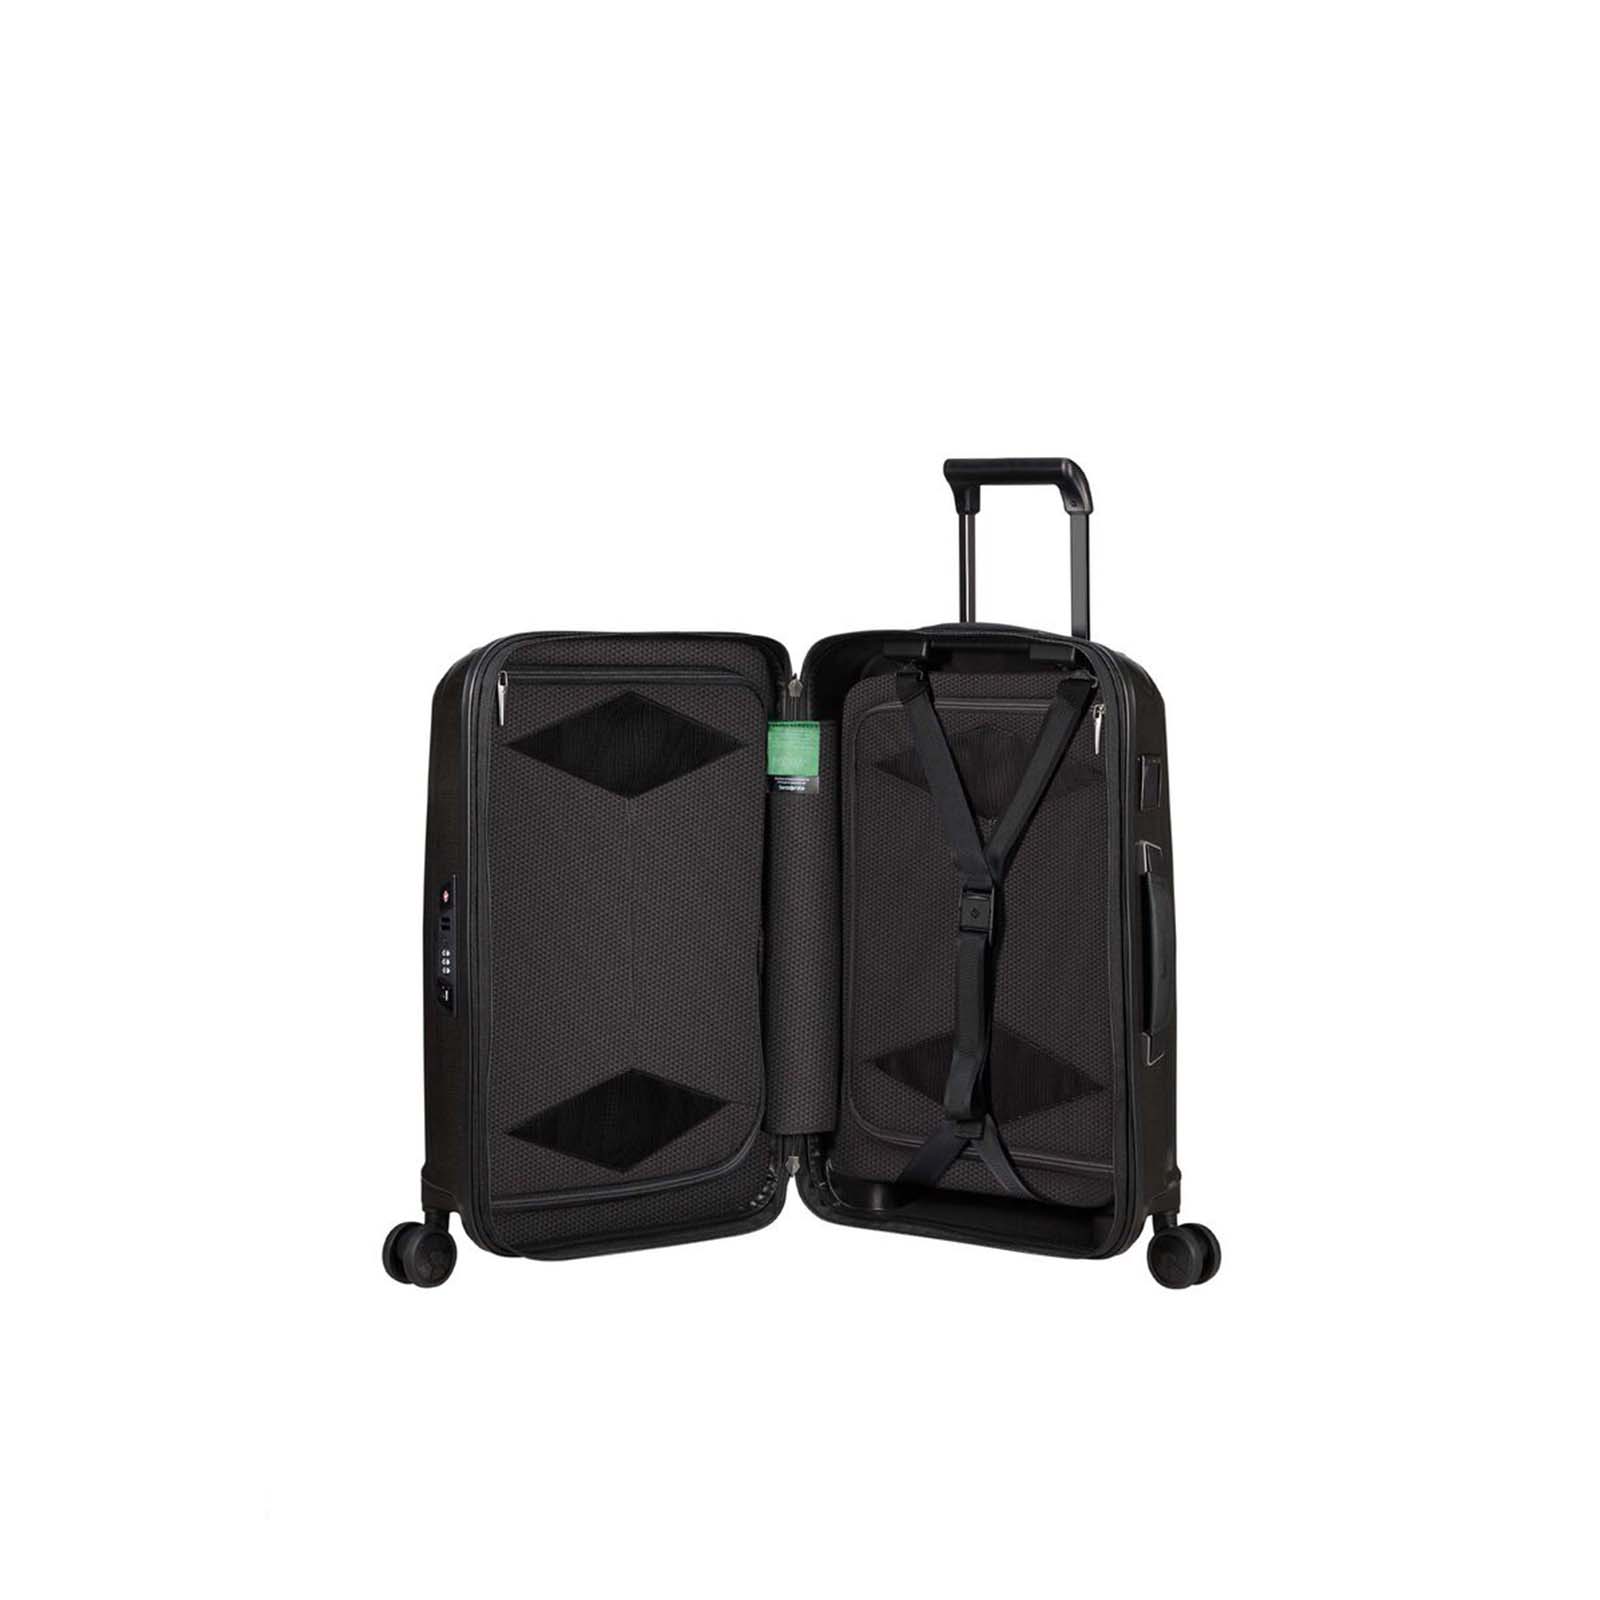 Samsonite-Major-Lite-55cm-Suitcase-Black-Open